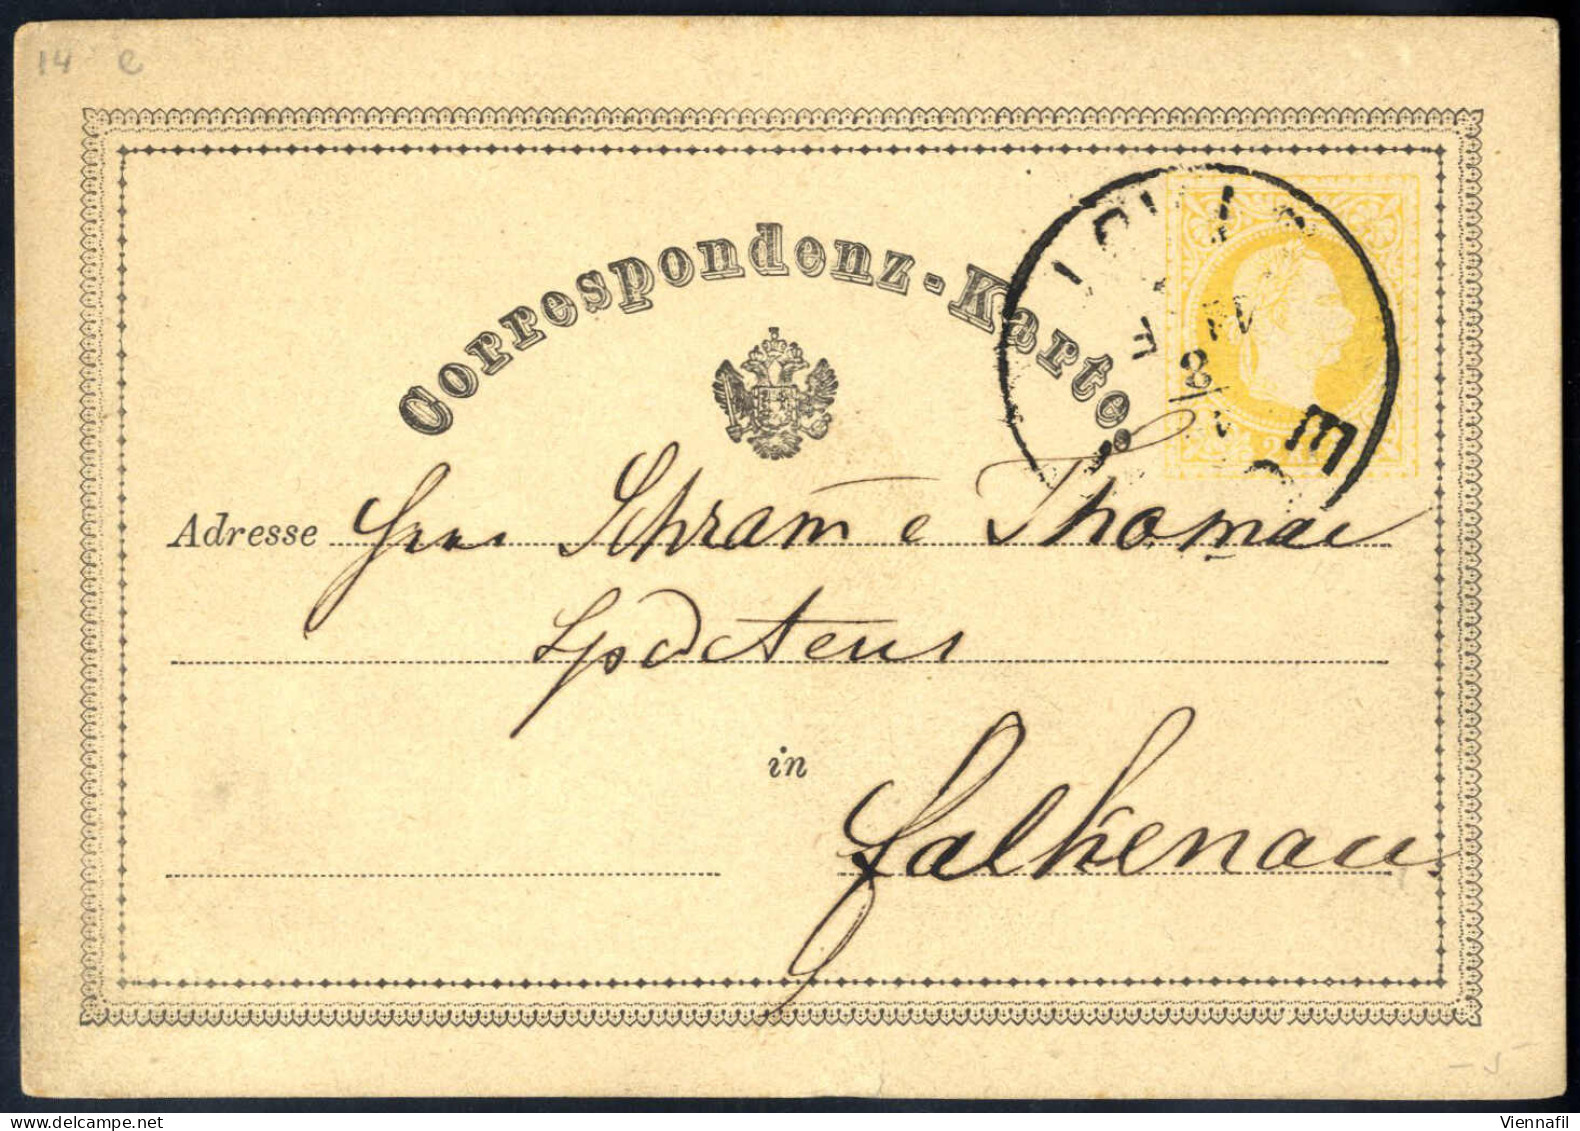 cover Korrespondenzkarten 1870/76, Posten von 64 gelben 2 Kr Ganzsachenkarten, meist gebraucht (nur wenige postfrisch), 